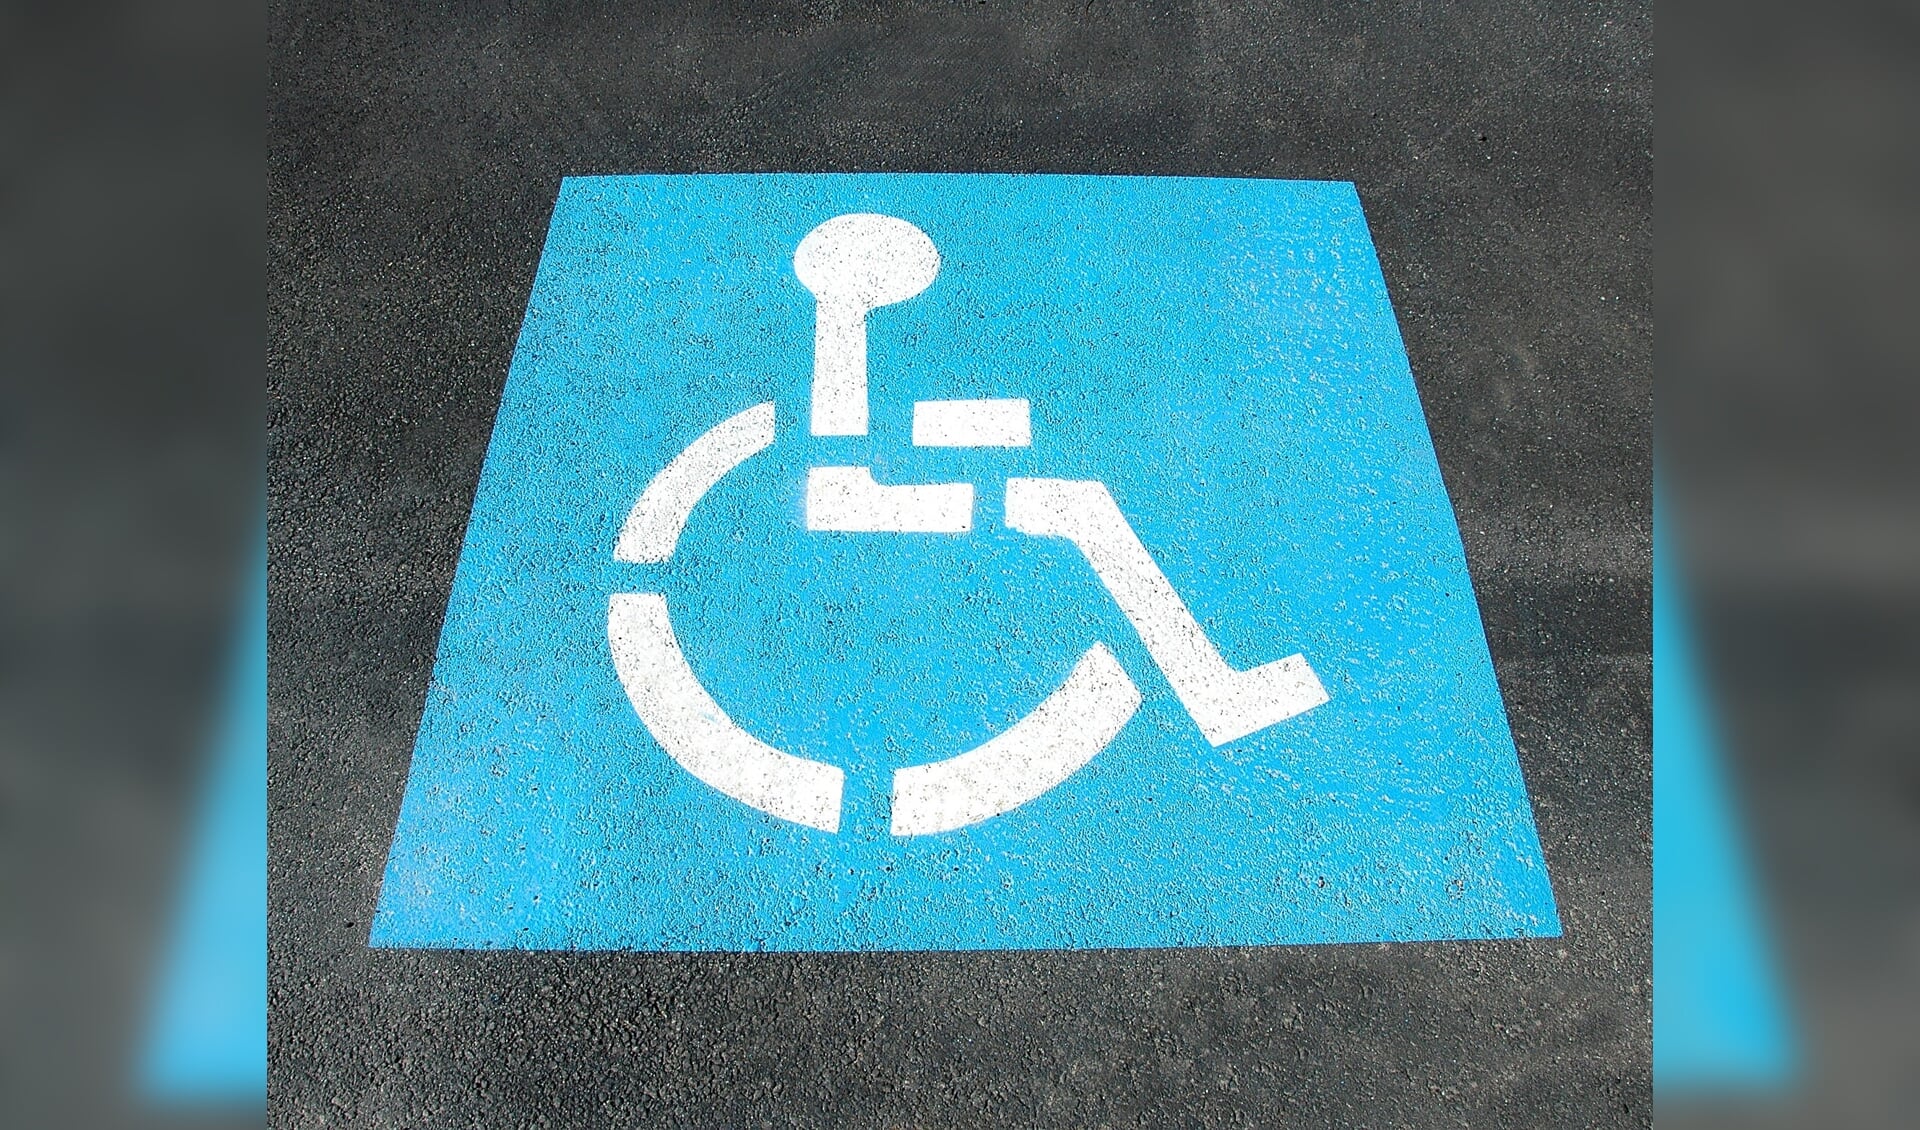 Parkeerplek alleen voor invaliden. Dit kan op de grond worden aangeduid, maar ook via borden.